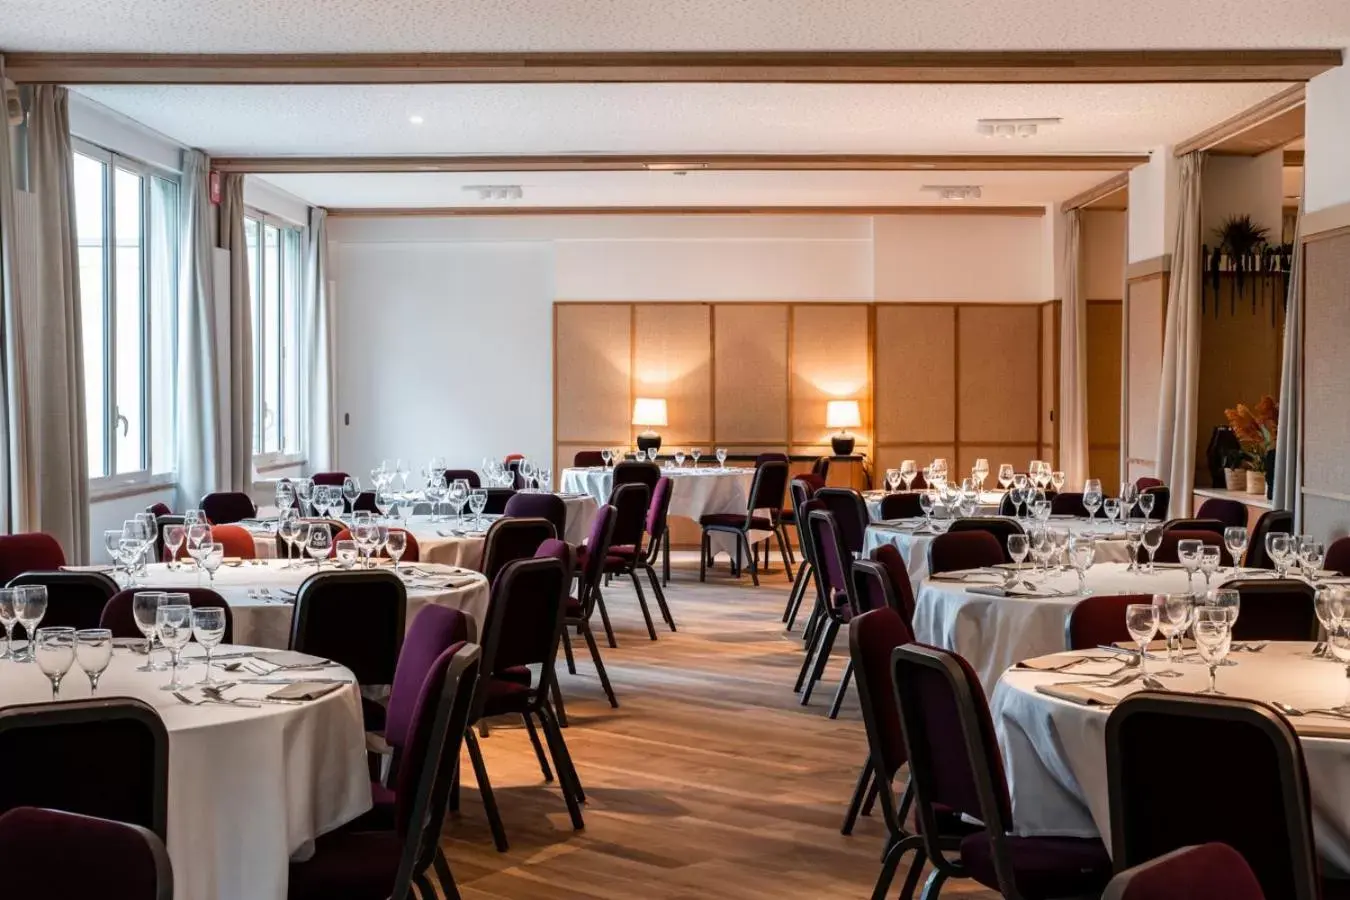 Banquet/Function facilities, Restaurant/Places to Eat in Best Western Plus l'Orée Paris Sud